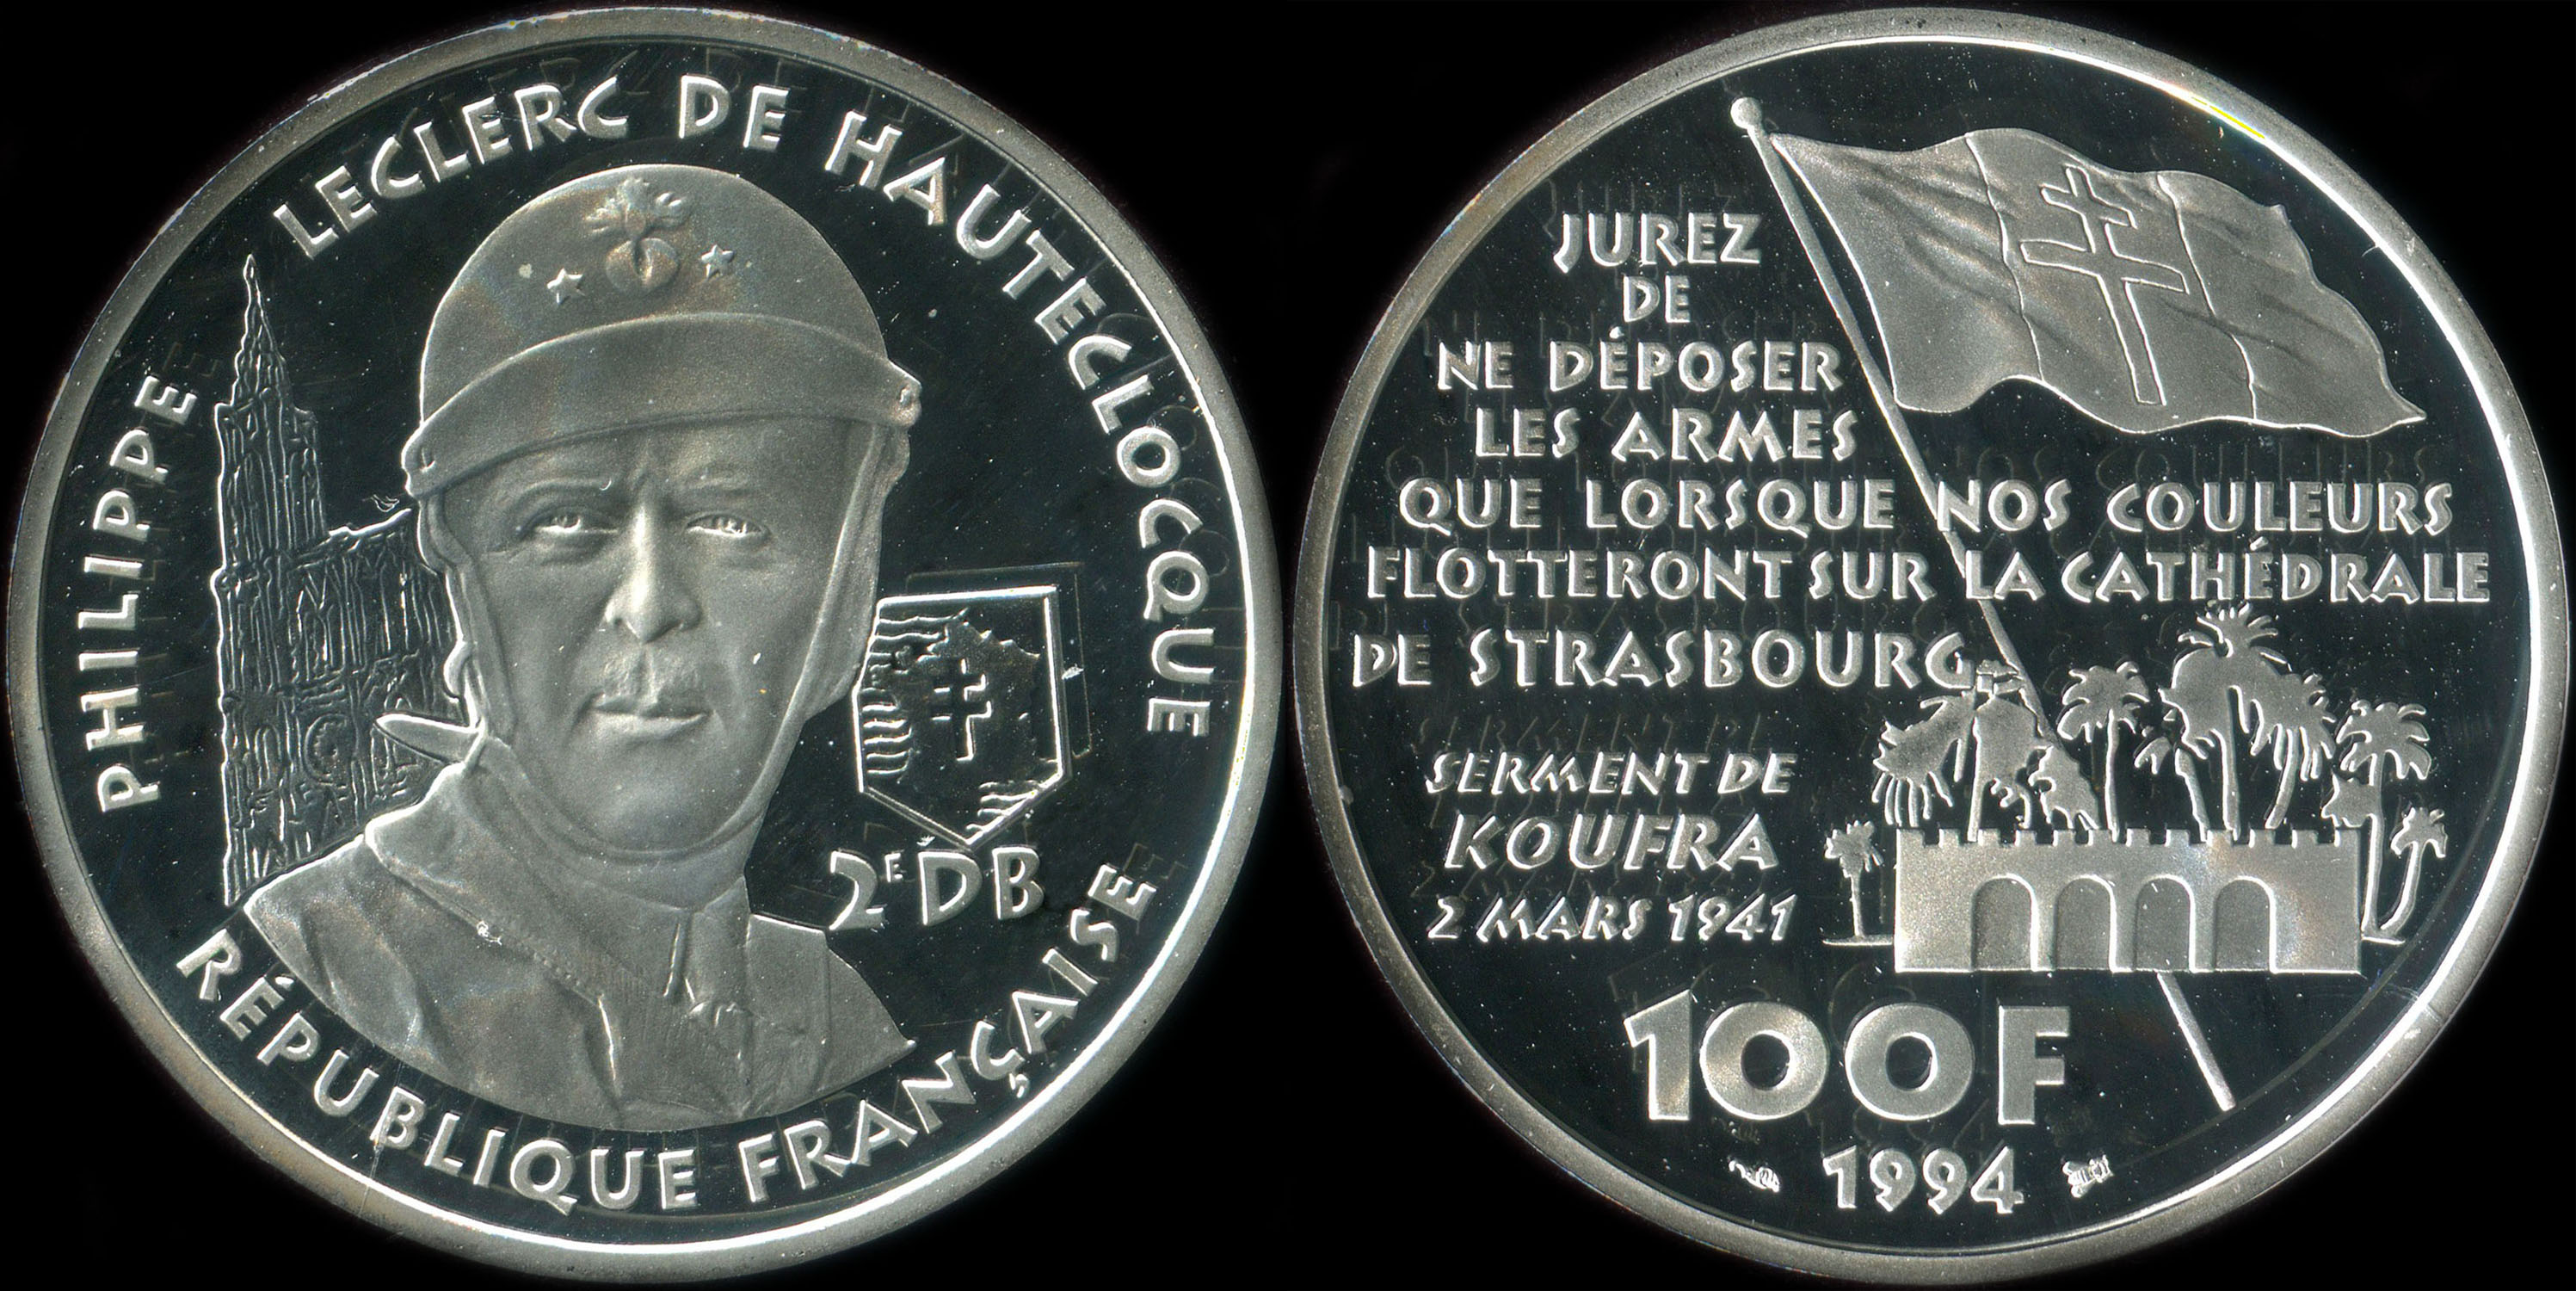 Pièce de 100 francs 1994 - La Liberté retrouvée - Philippe Leclerc de Hautecloque - Serment de Koufra 2 mars 1941